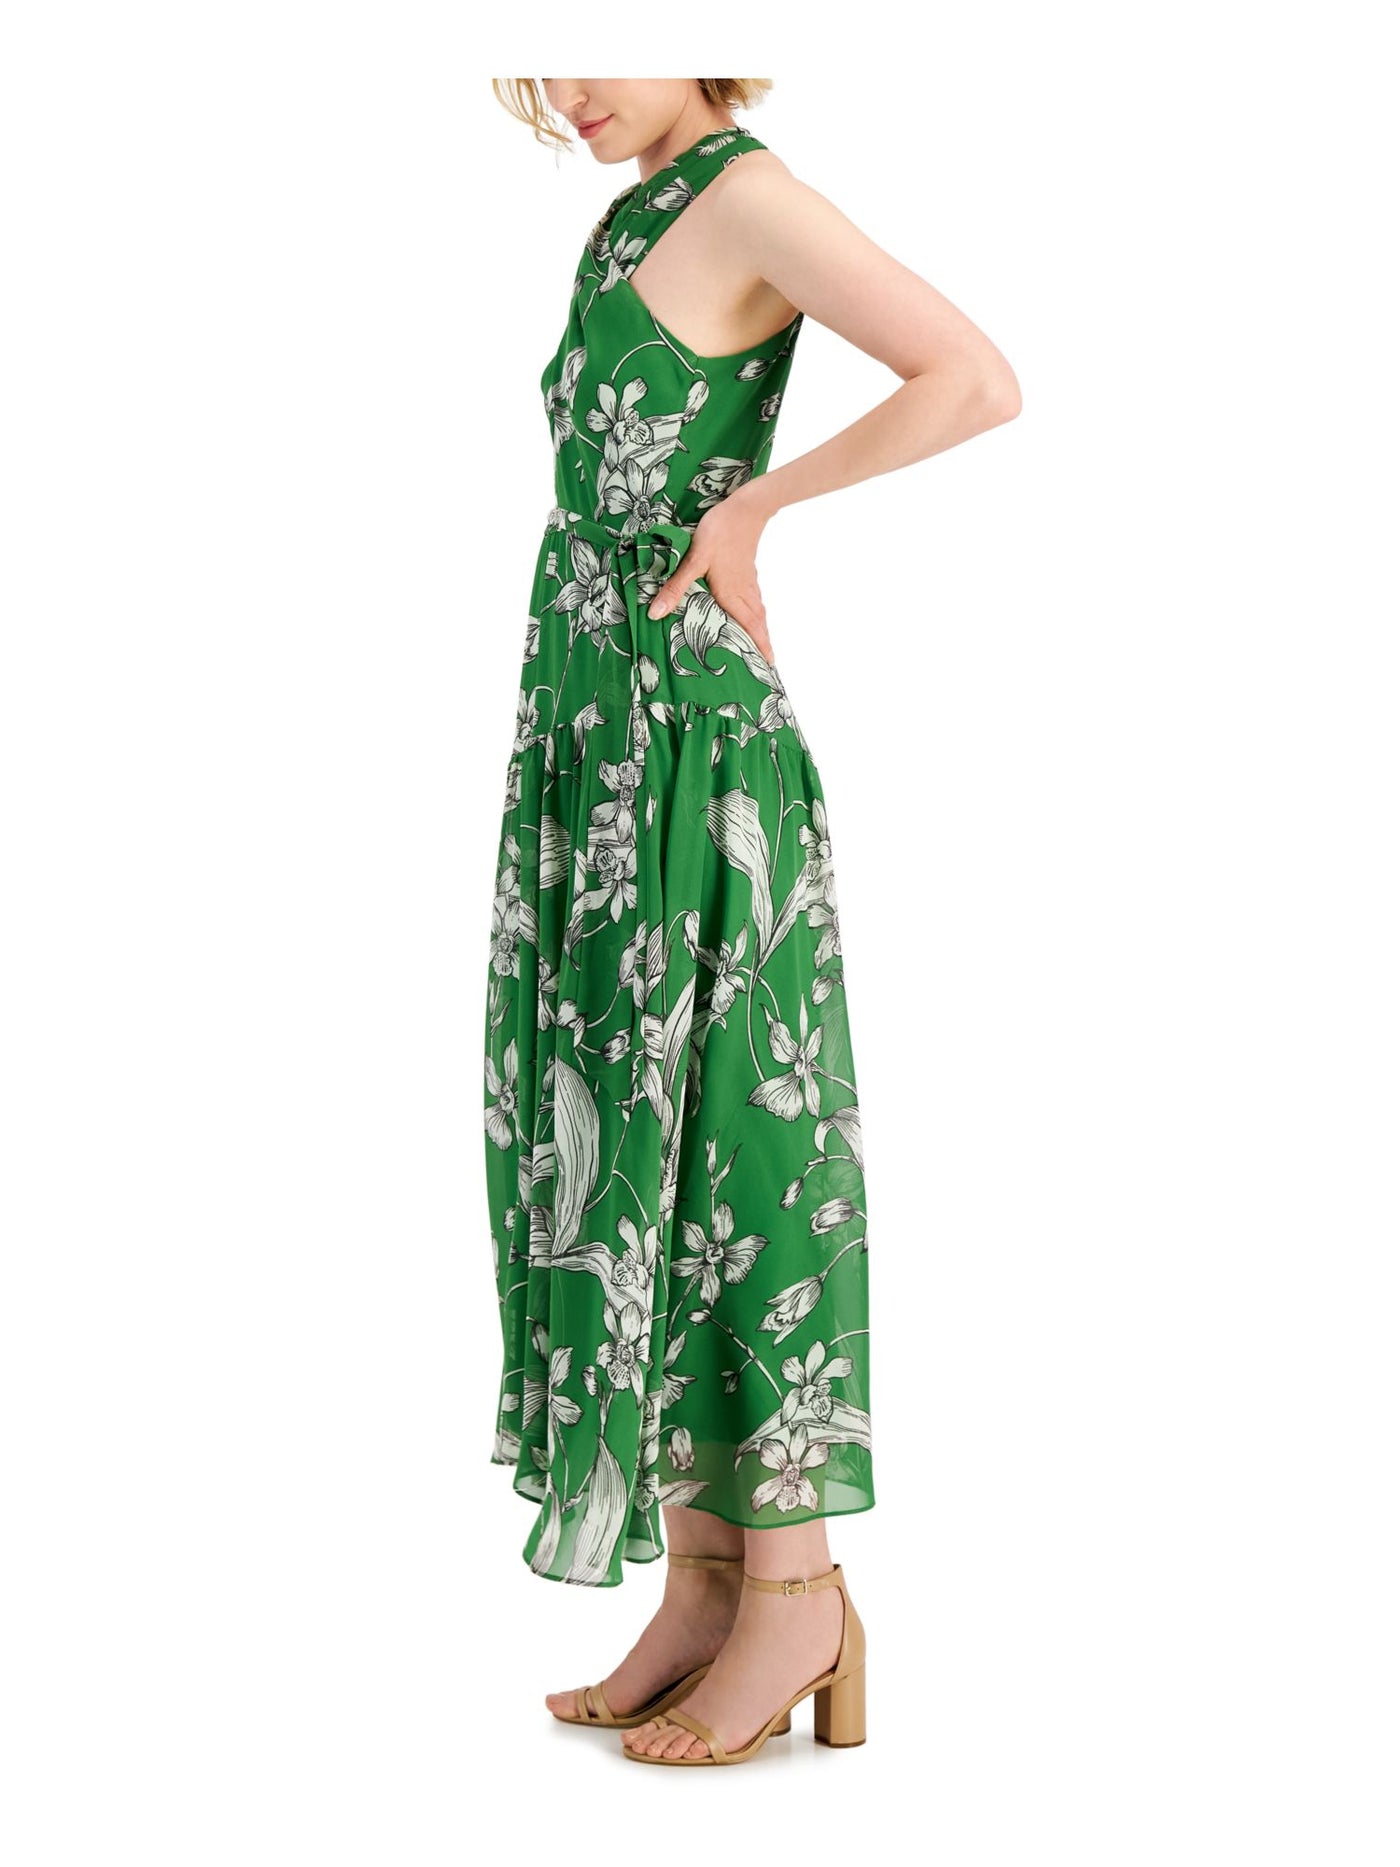 TAYLOR Womens Green Zippered Sheer Crisscross Self Tie Waist Lined Floral Sleeveless Halter Maxi Fit + Flare Dress 14